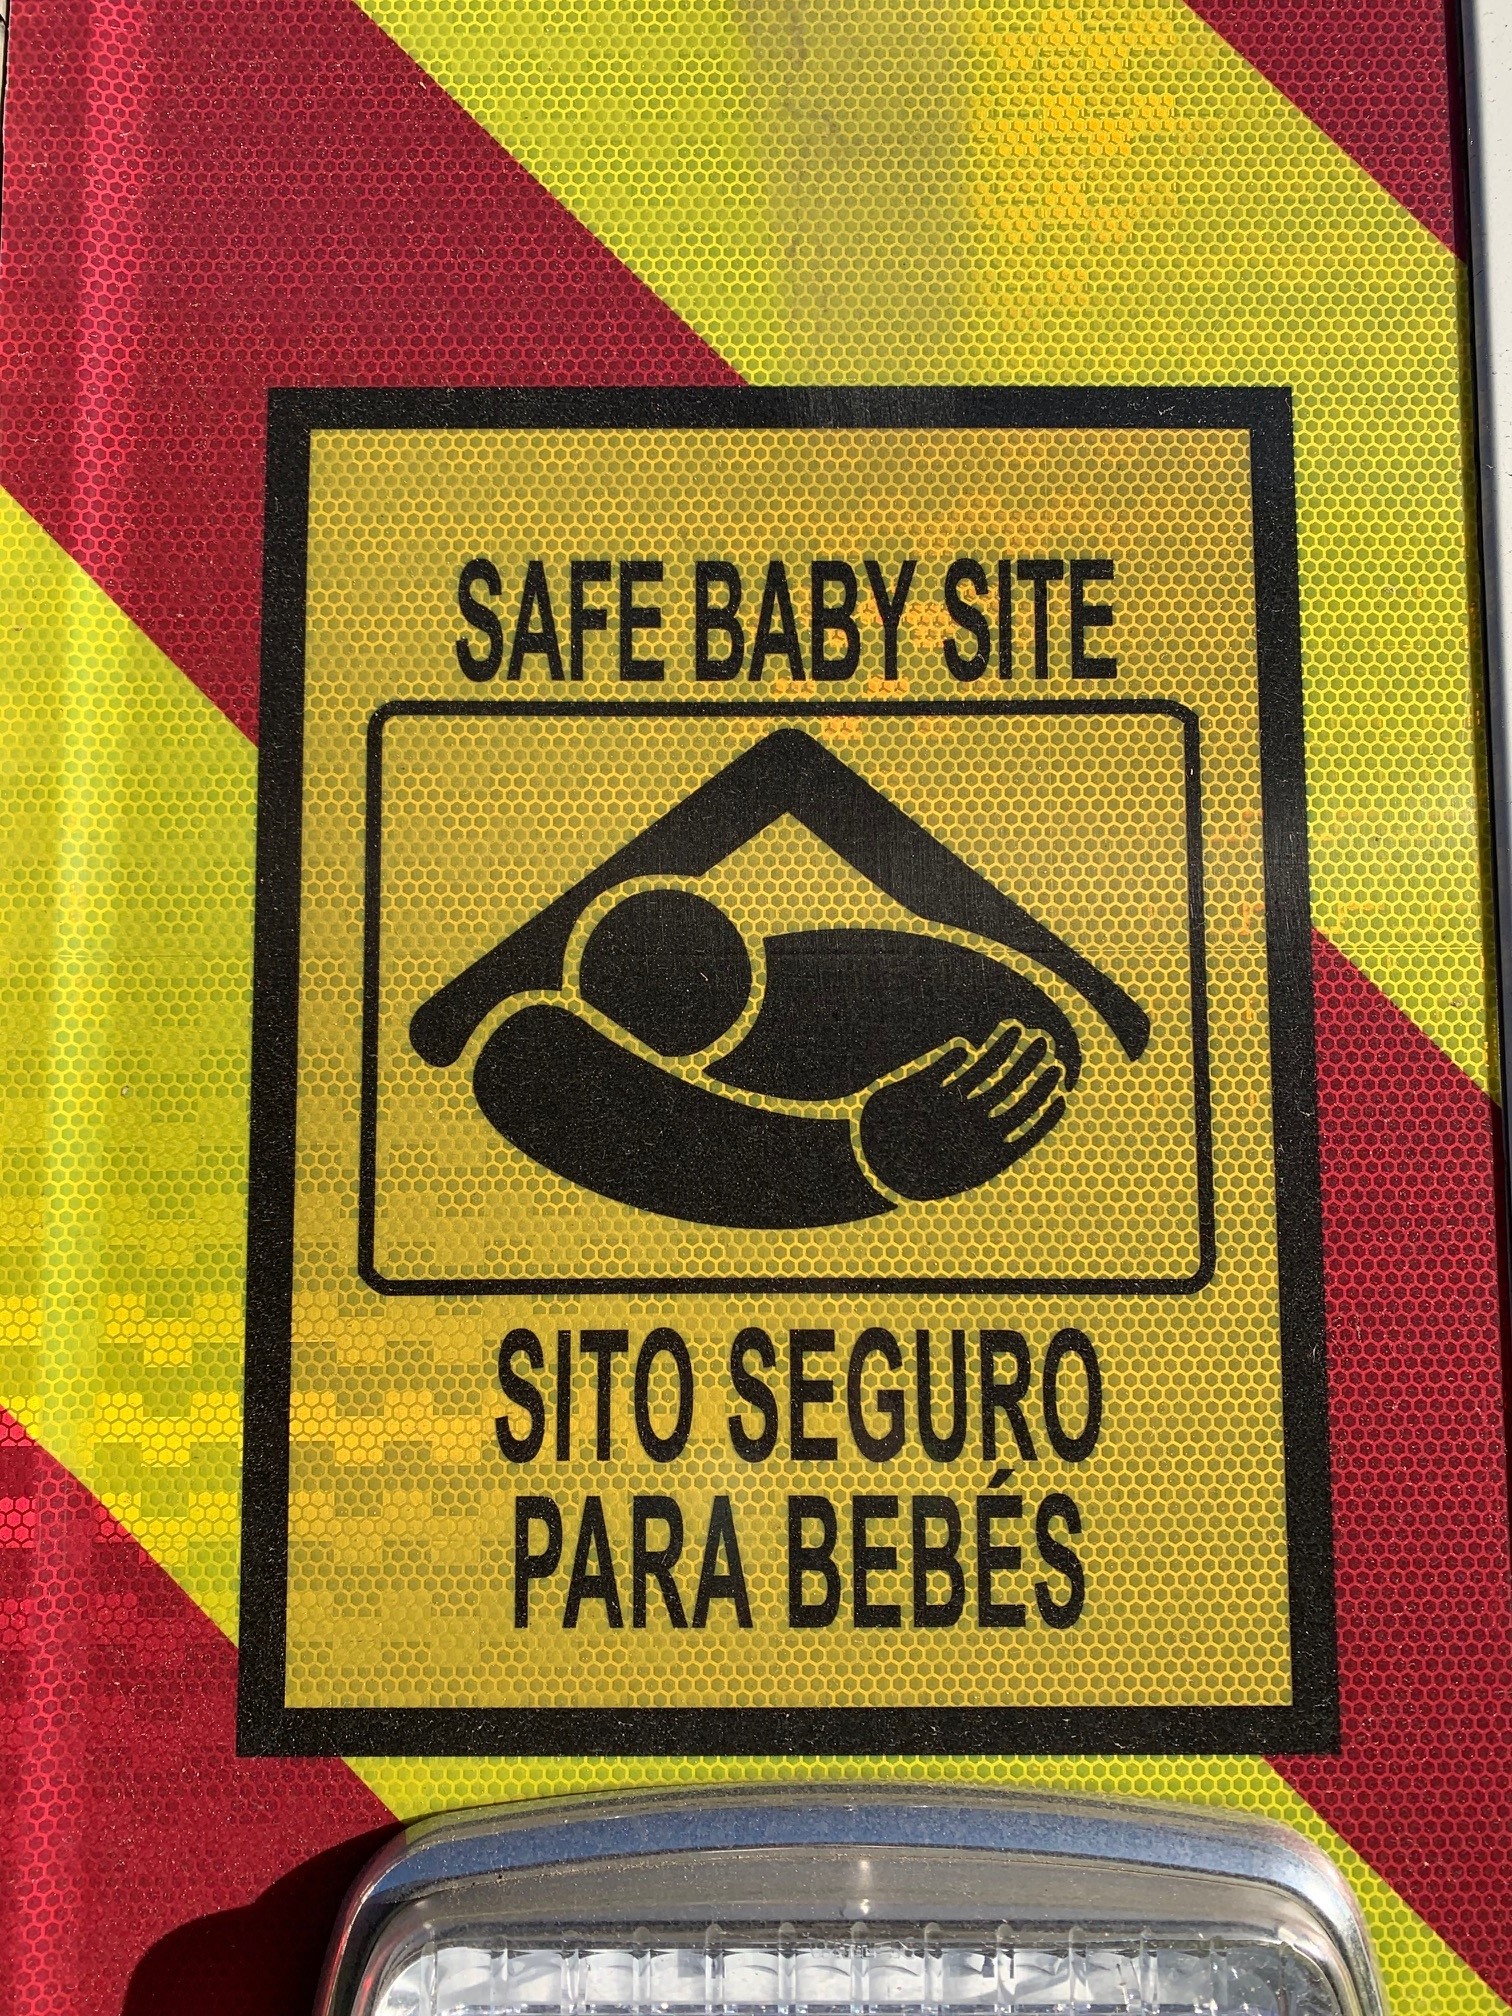 MedStar Ambulances: Designated Safe Baby Sites